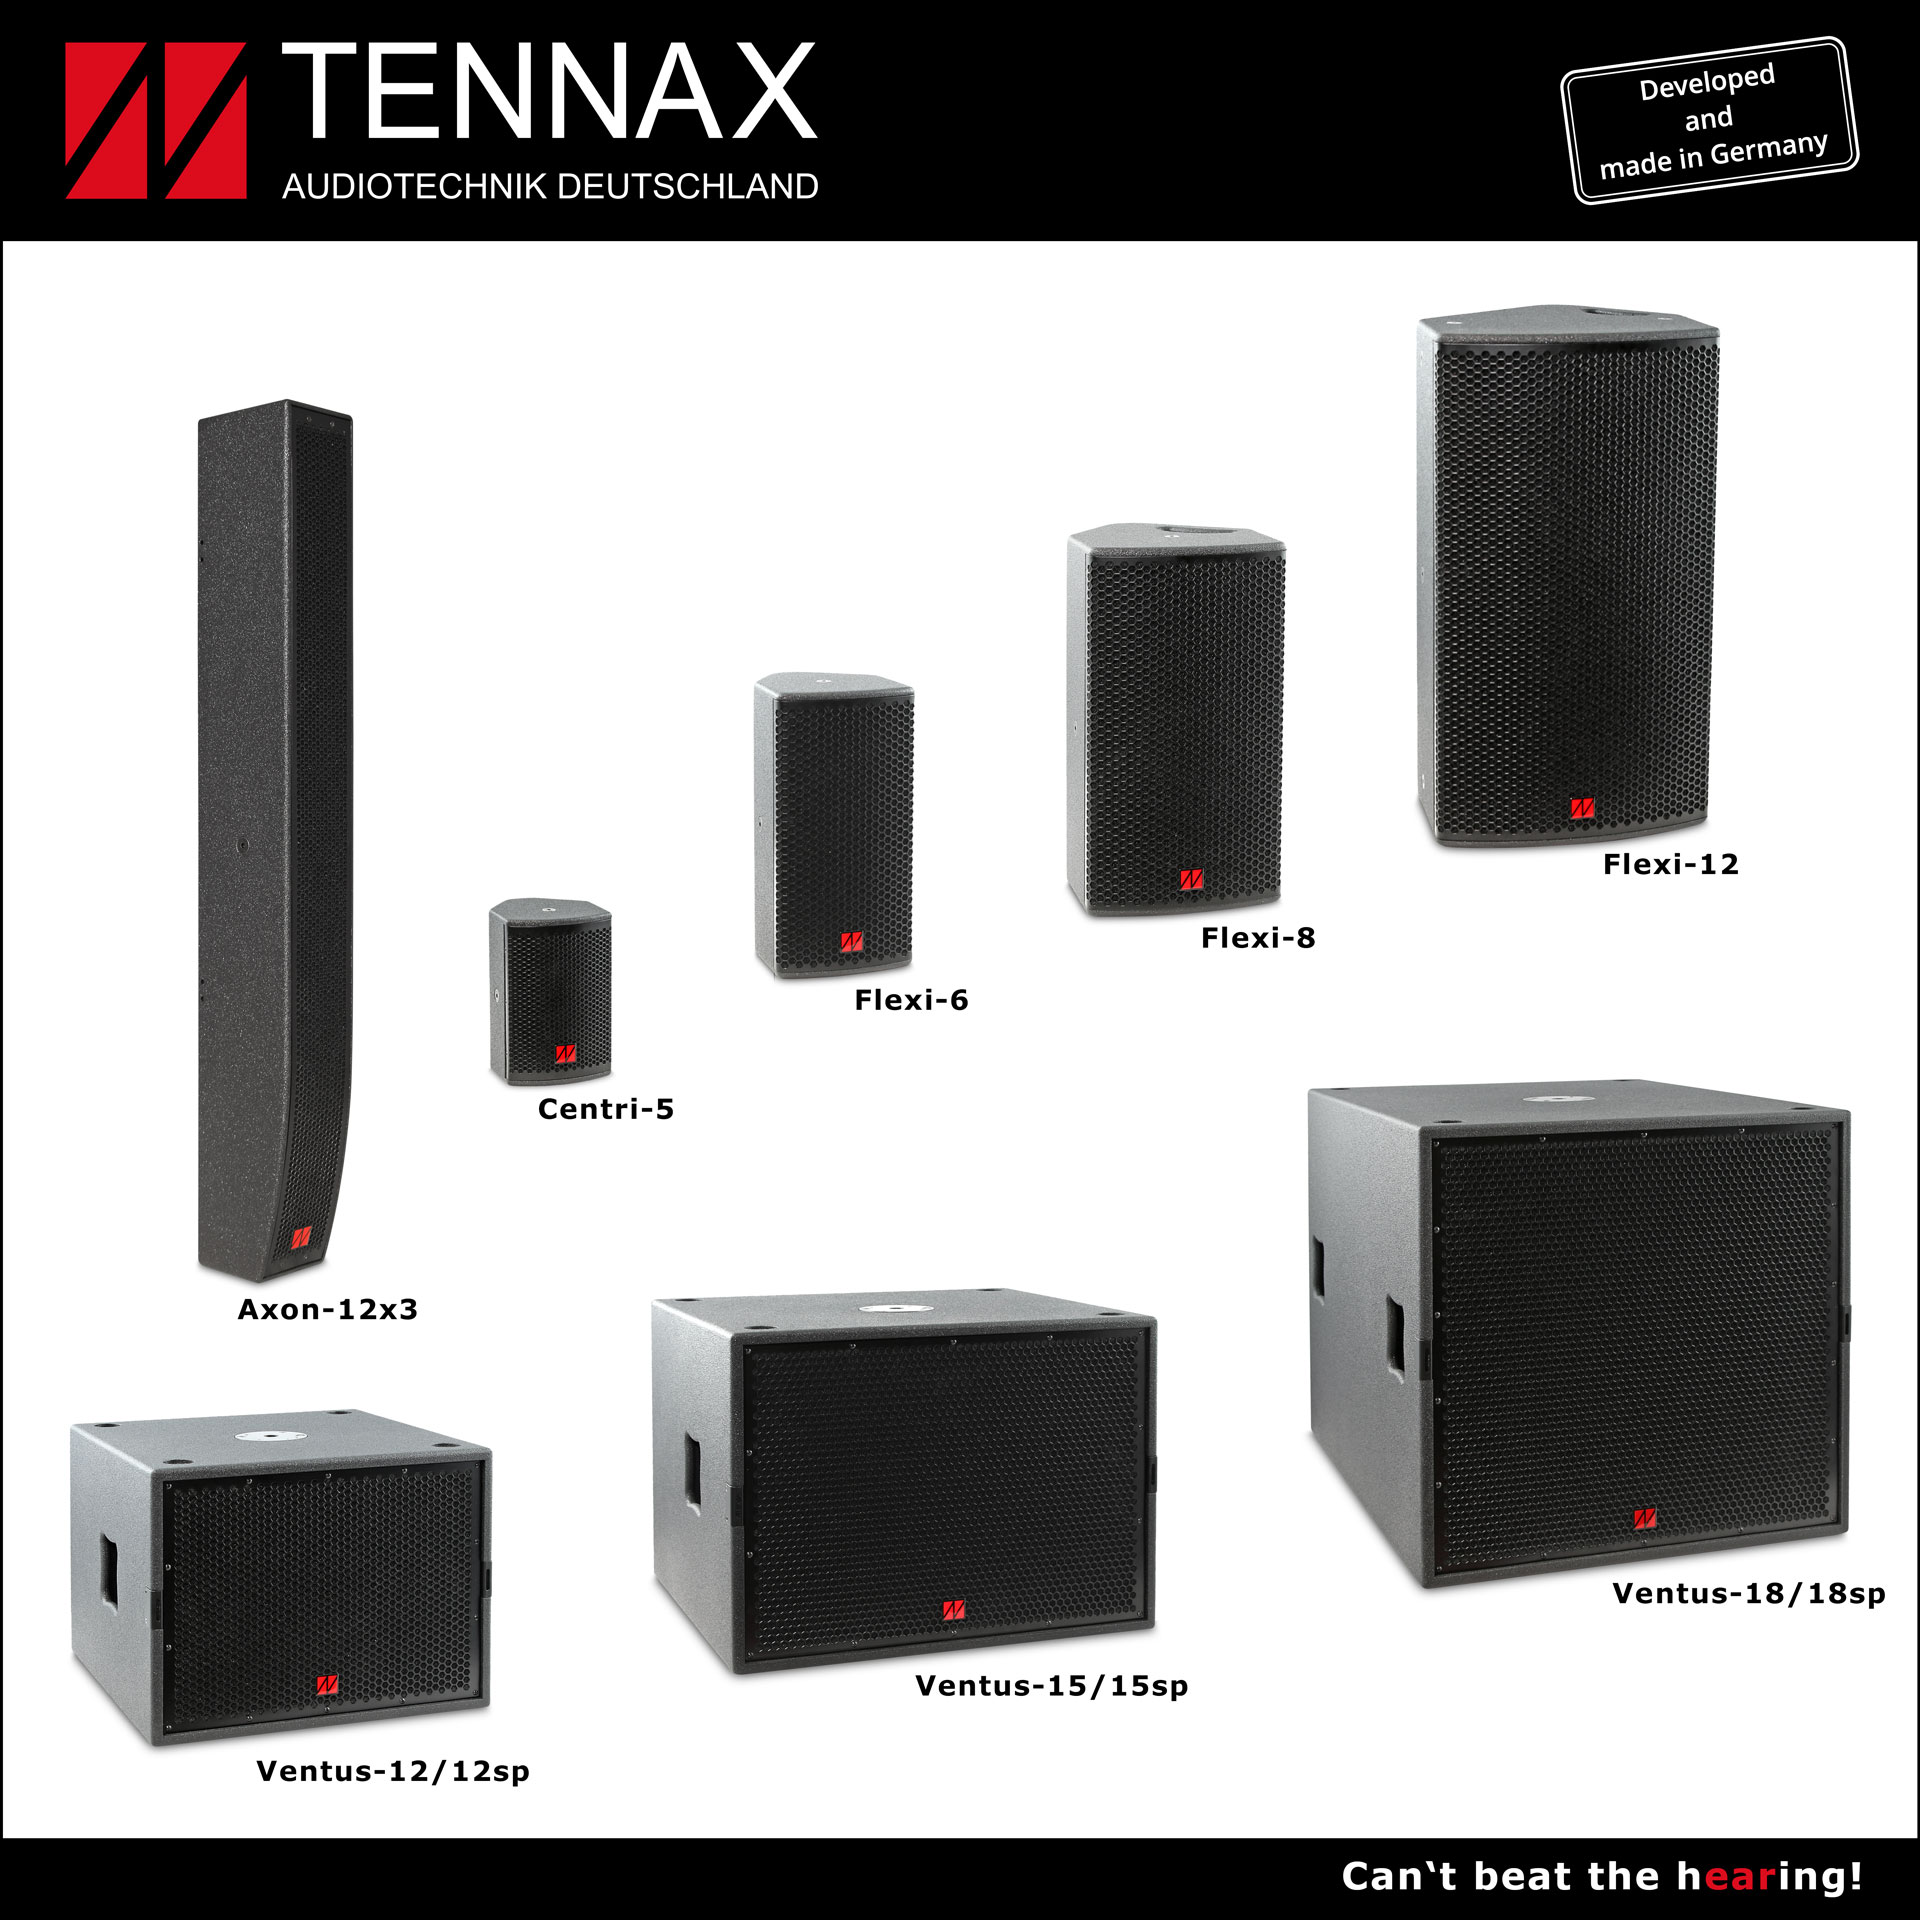 Produktionsstart von TENNAX Audiotechnik Deutschland